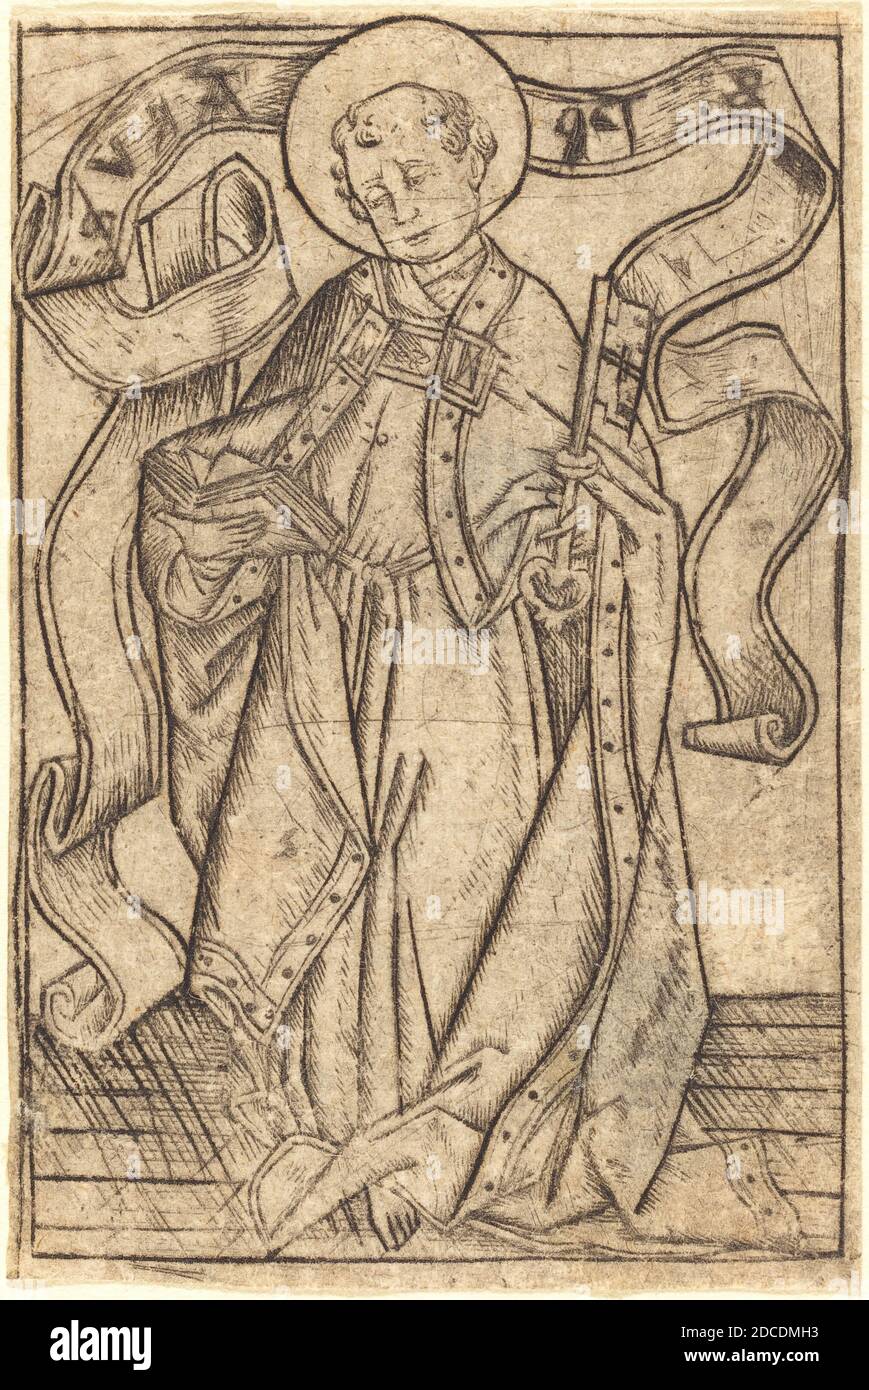 Israhel van Meckenem, (artist), German, c. 1445 - 1503, Saint Peter, c. 1465, engraving Stock Photo